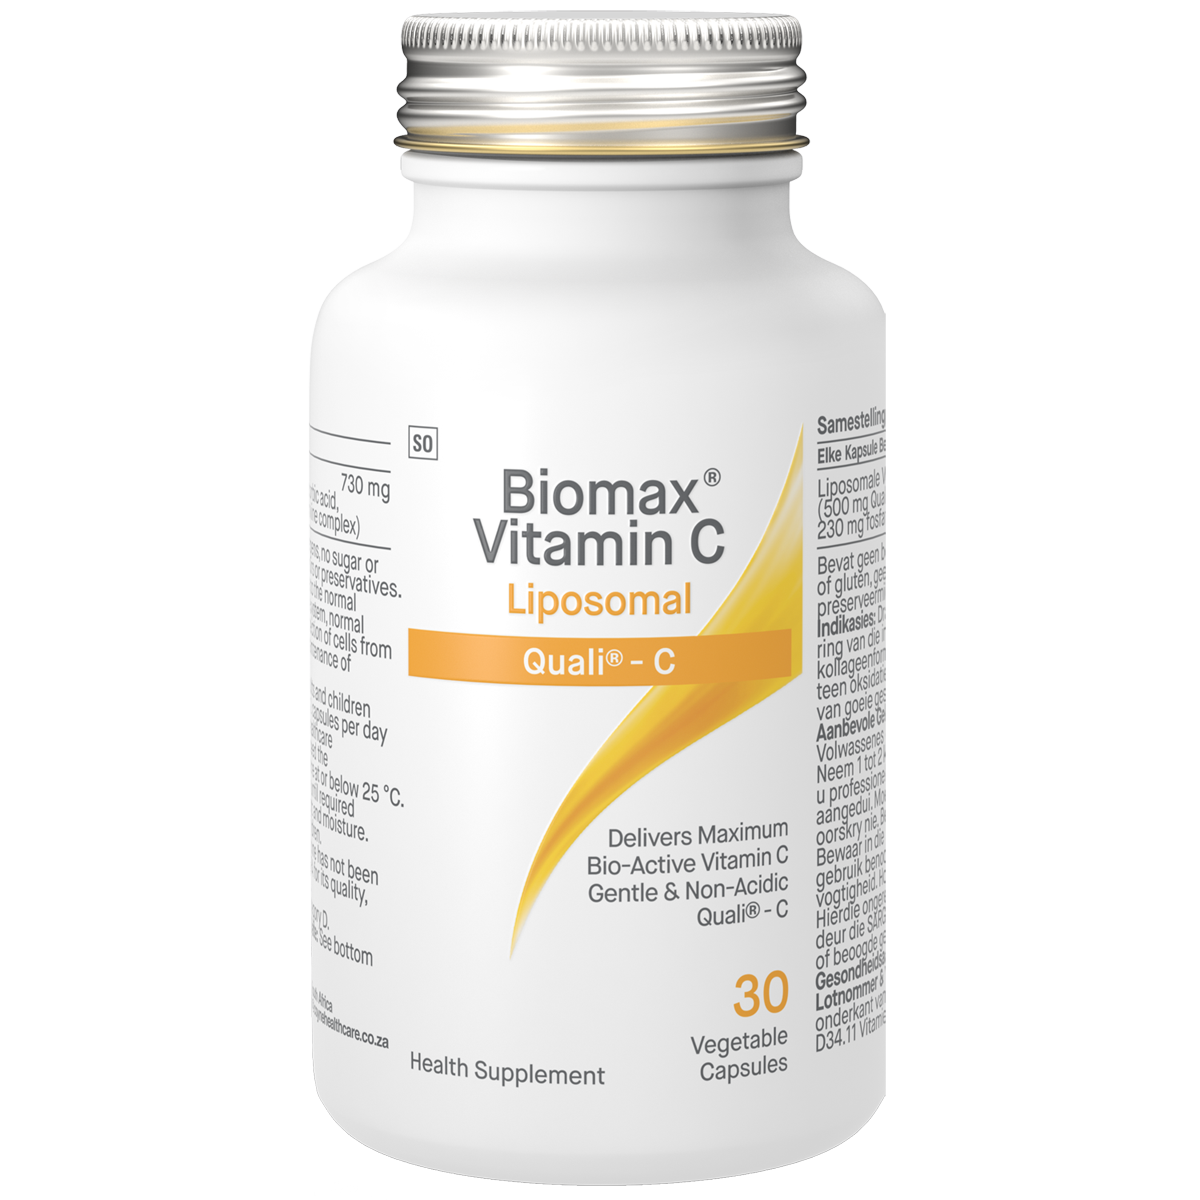 Biomax Vitamin C Liposomal 30 Veg Caps